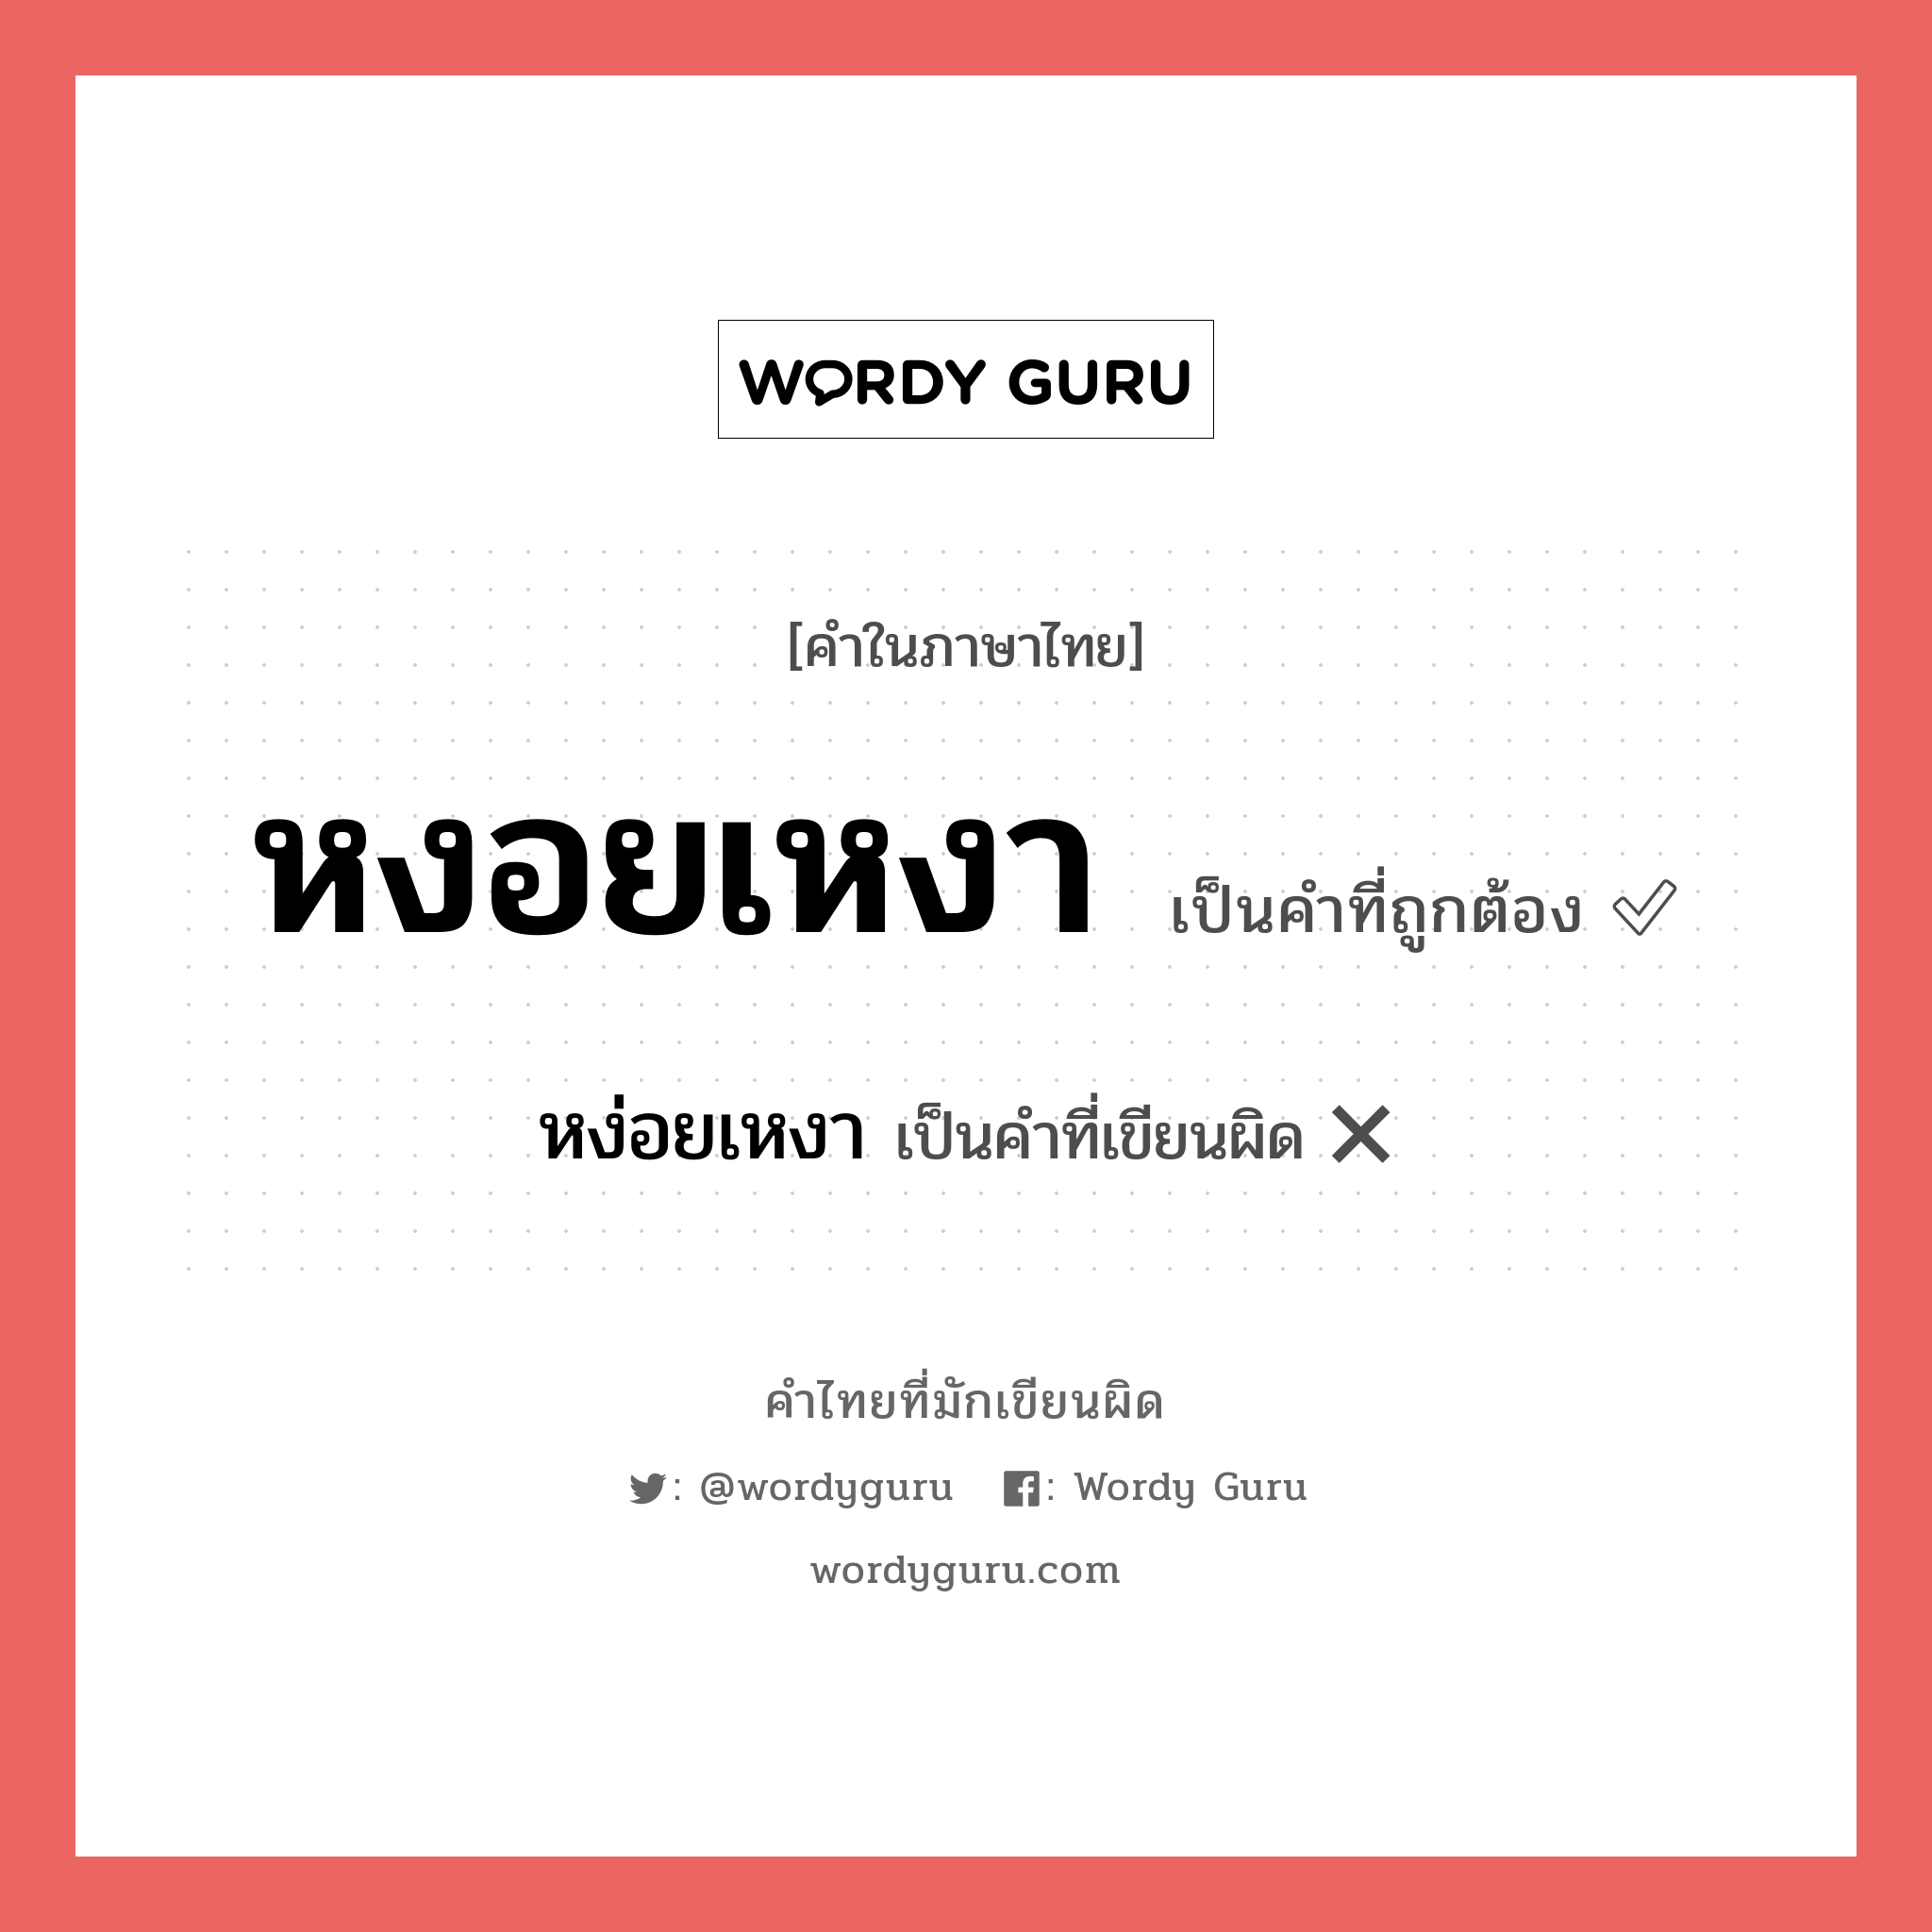 หงอยเหงา หรือ หง่อยเหงา คำไหนเขียนถูก?, คำในภาษาไทยที่มักเขียนผิด หงอยเหงา คำที่ผิด ❌ หง่อยเหงา